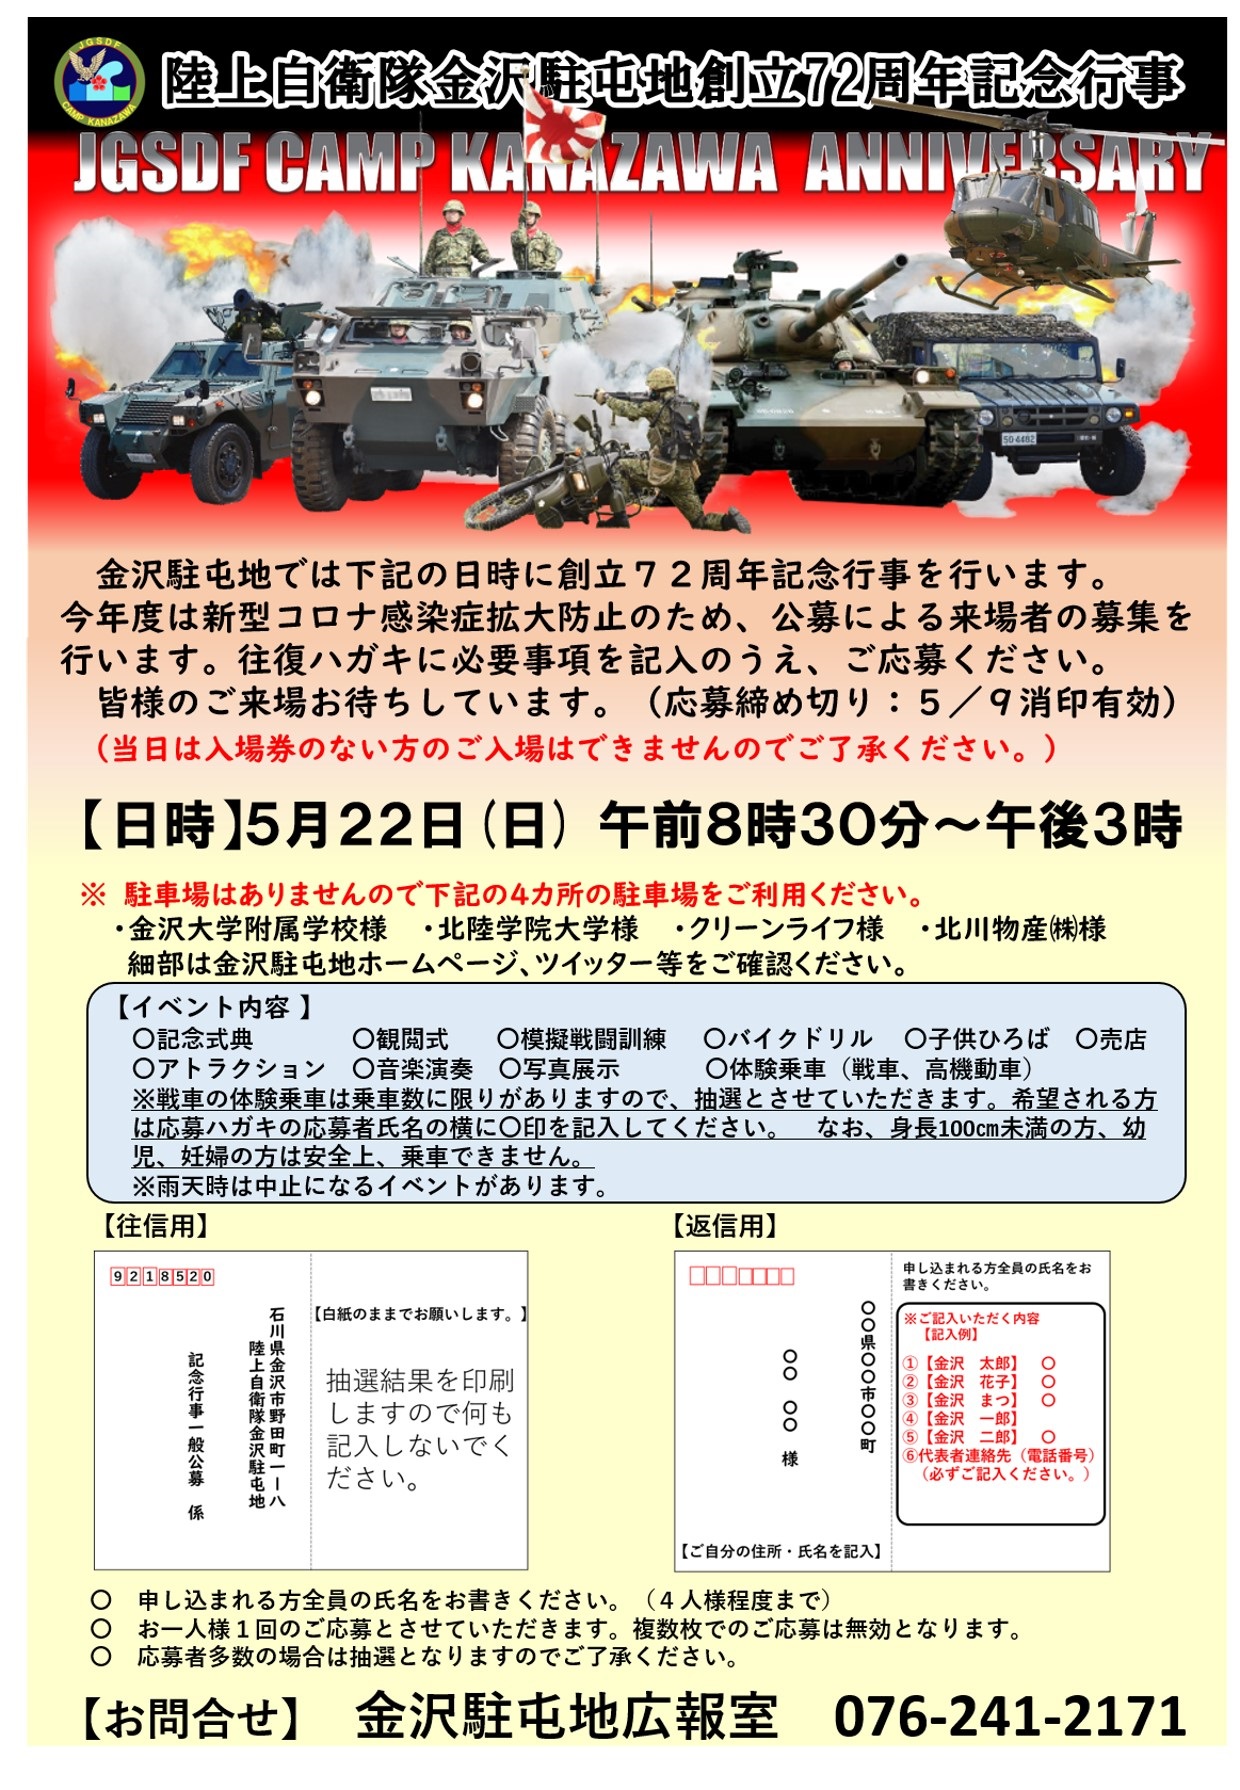 金沢駐屯地 創立72周年記念行事ポスター